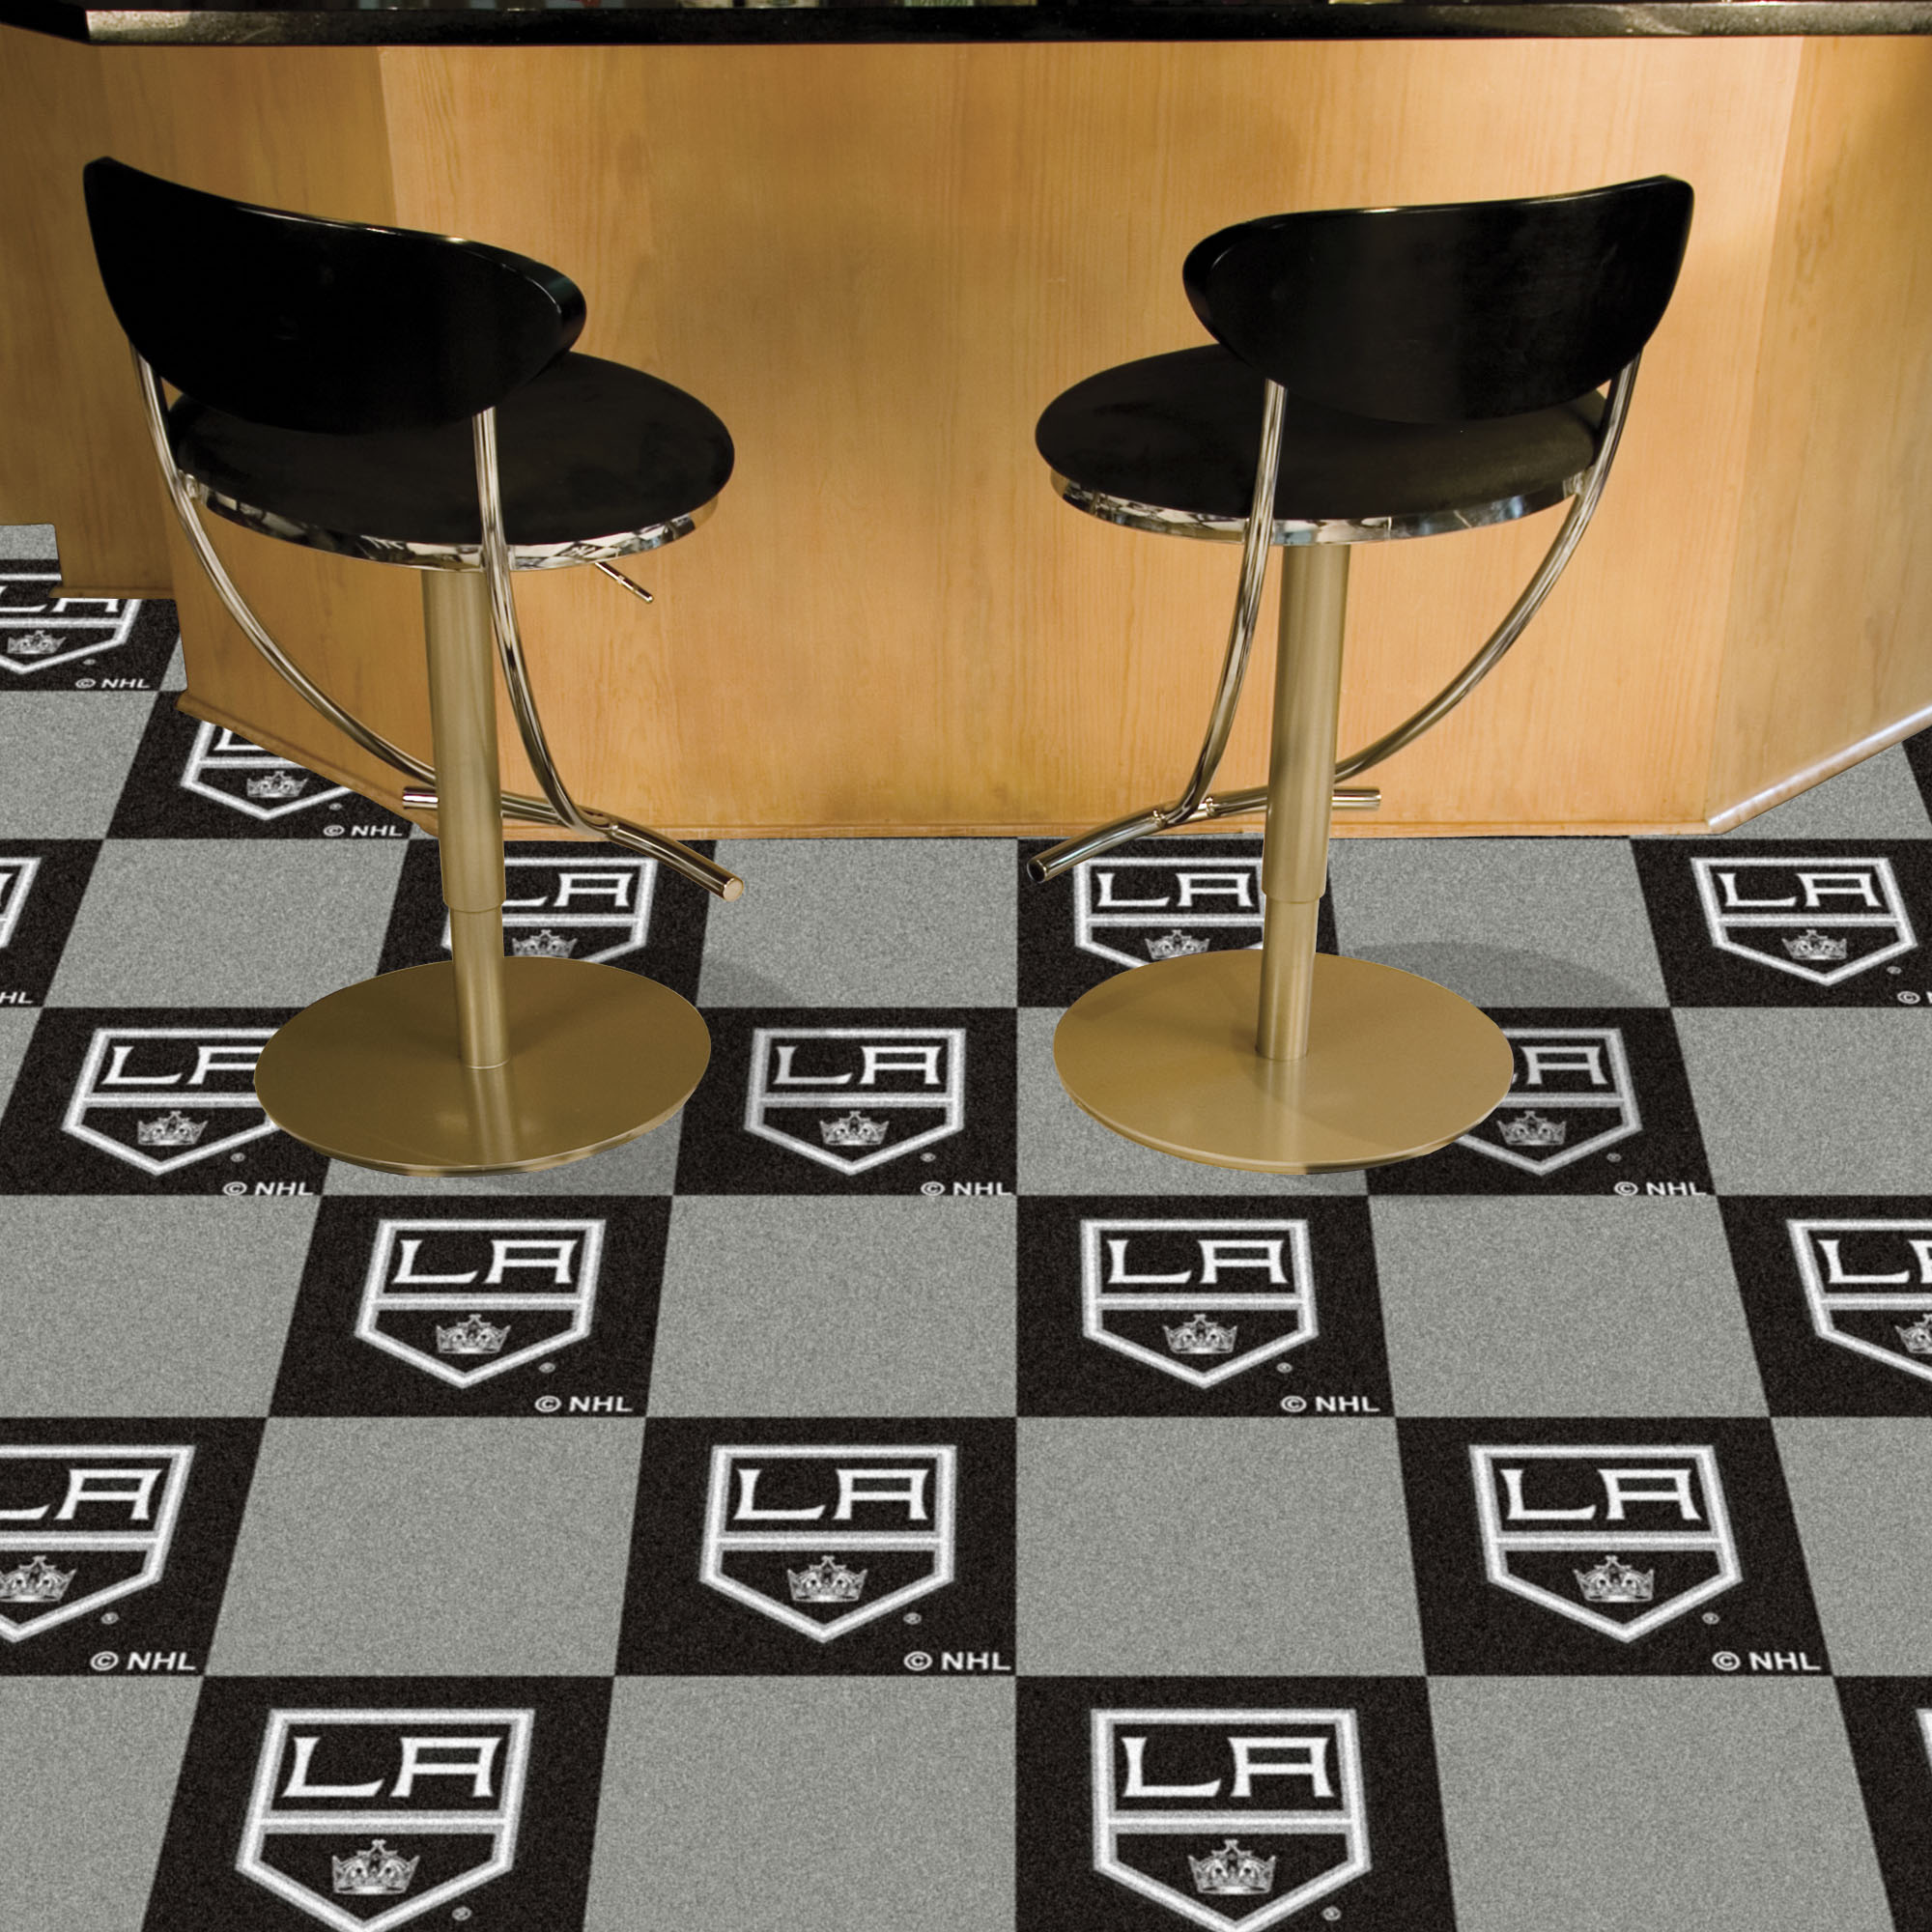 Los Angeles Kings Team Carpet Tiles - 45 sq ft